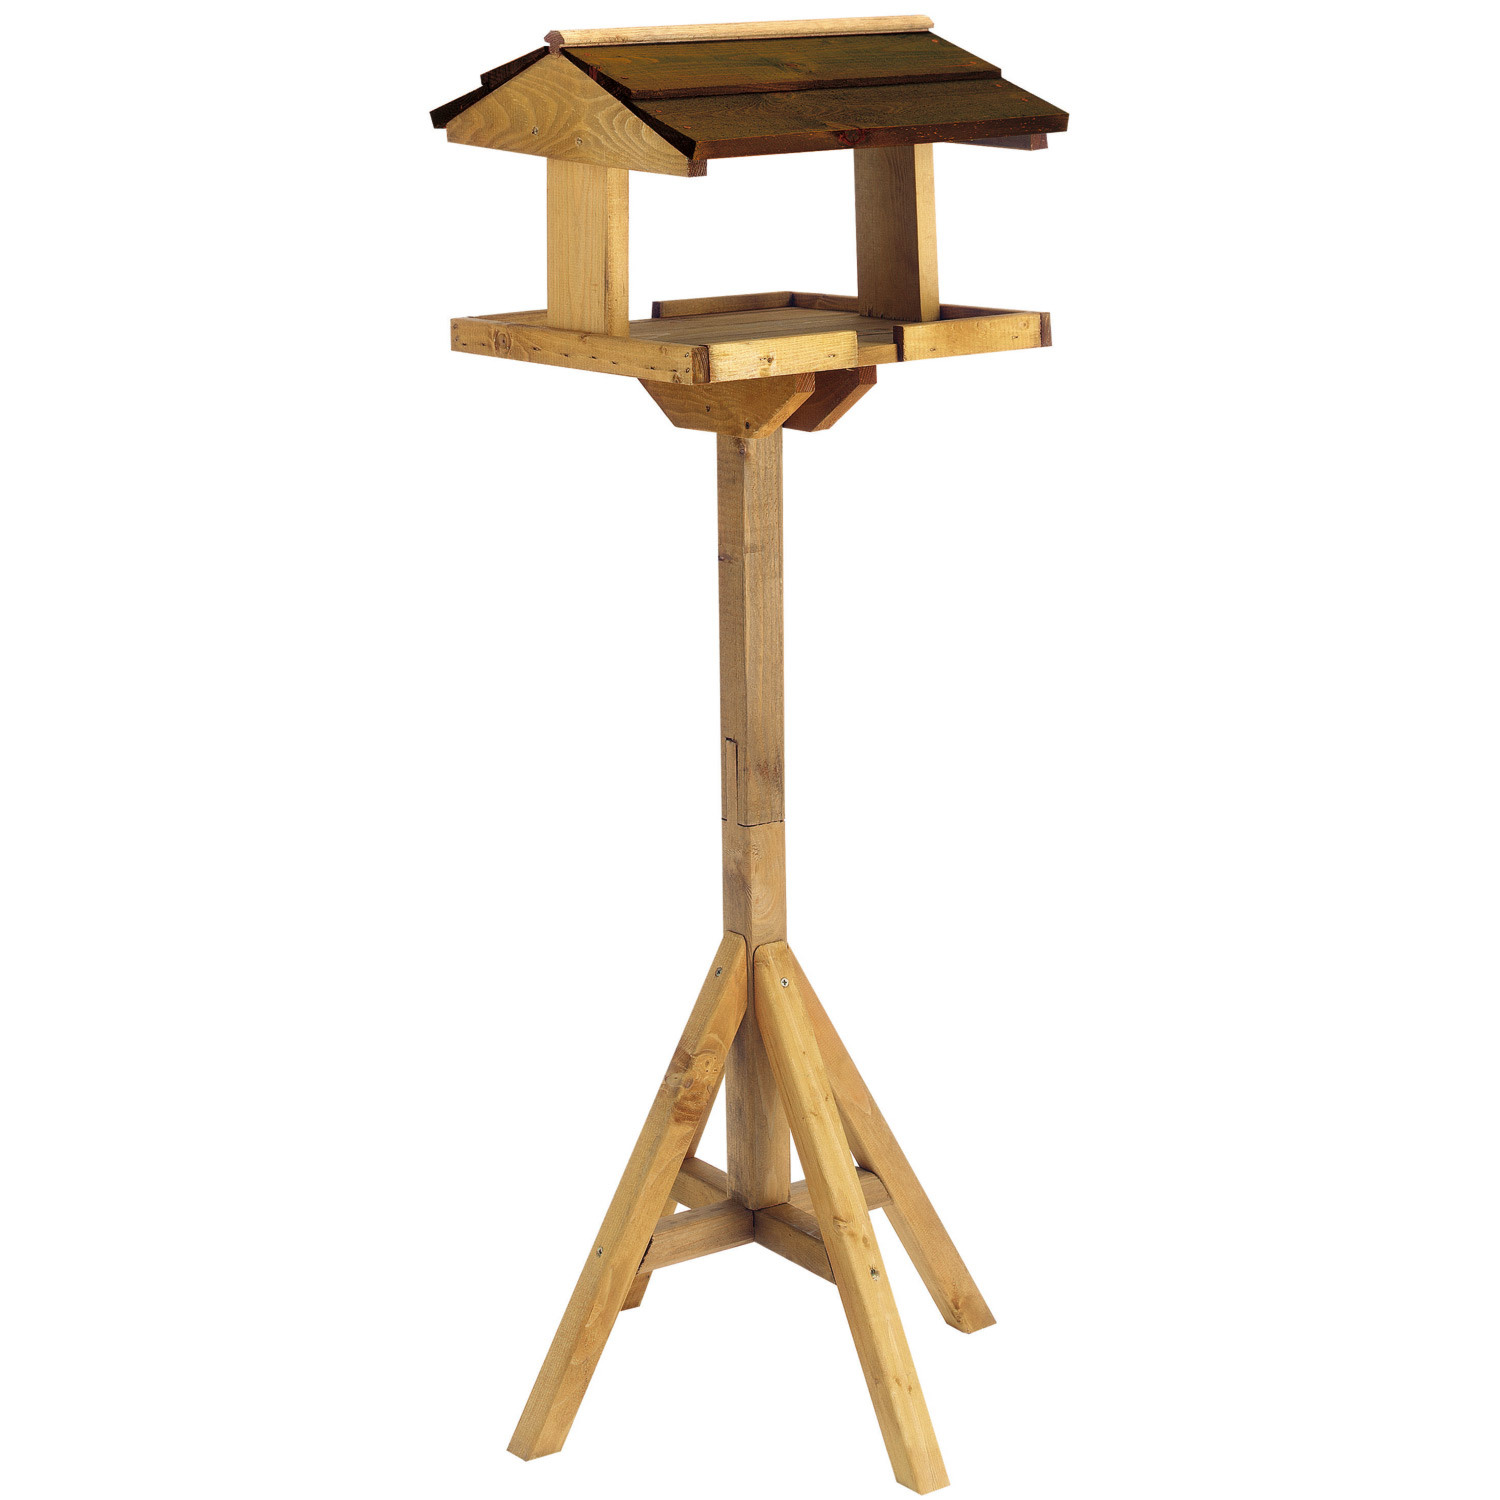 Bonnington Wooden Bird Table Image